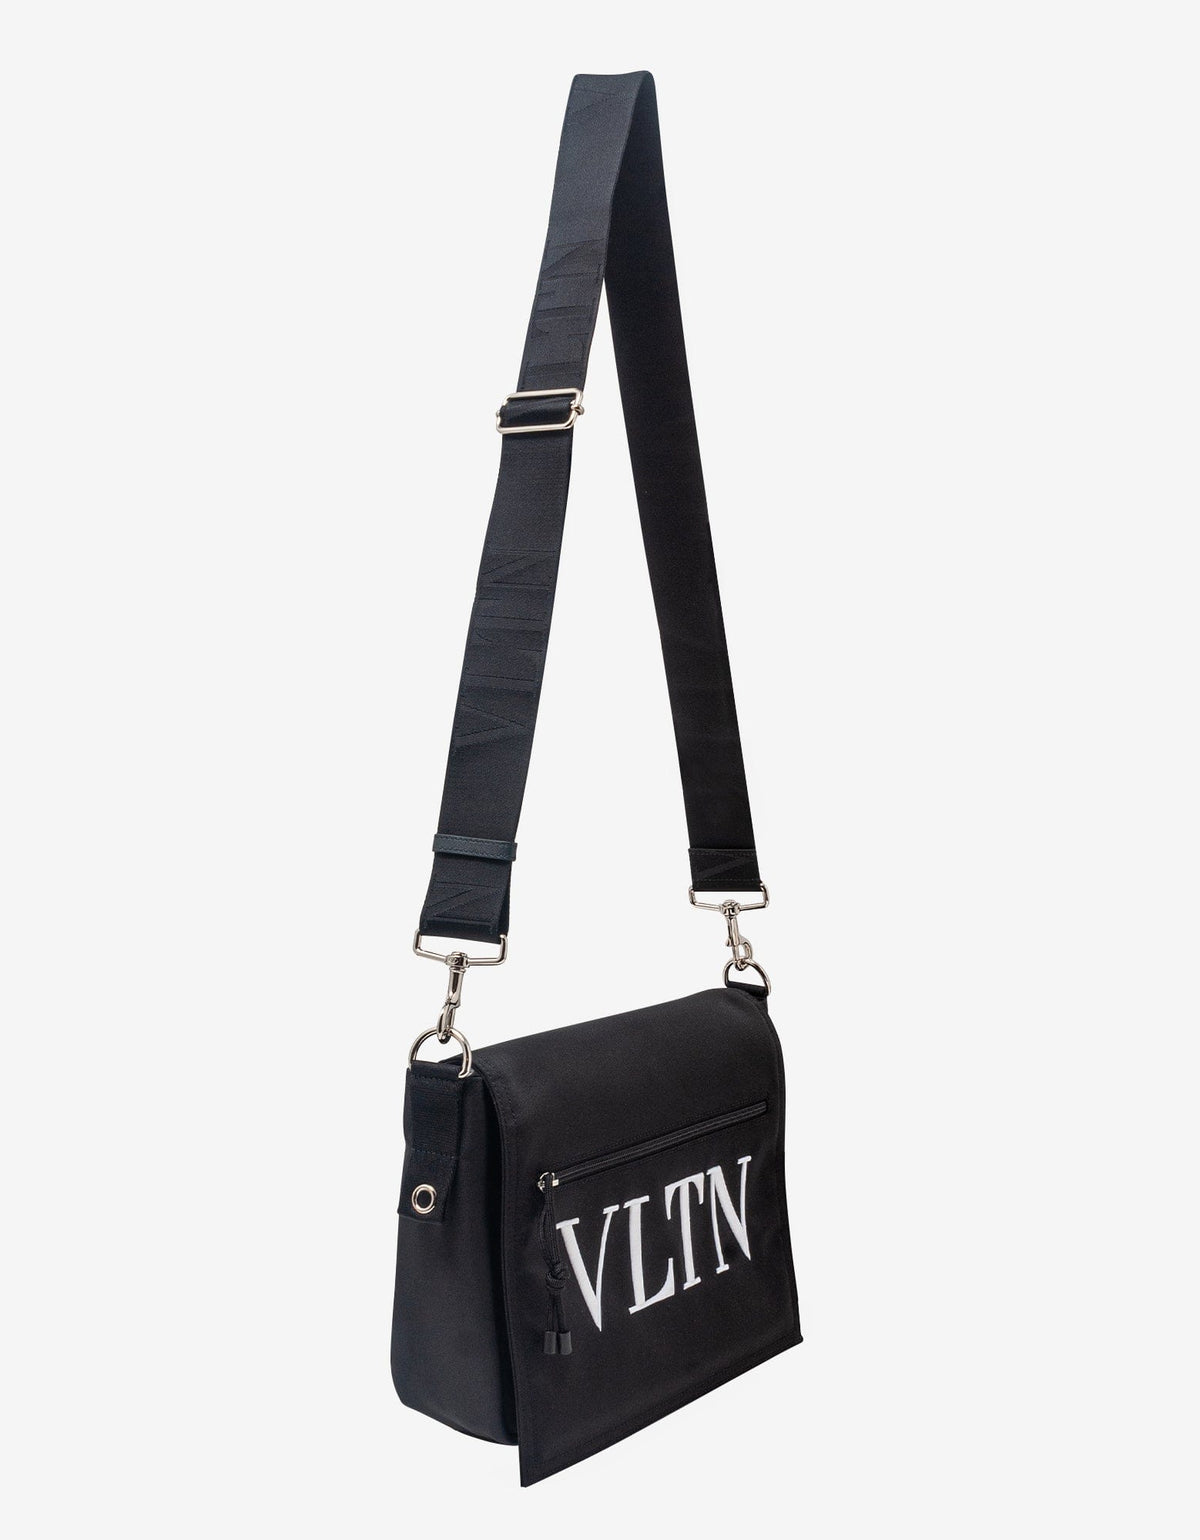 Valentino Garavani Black VLTN Nylon Messenger Bag